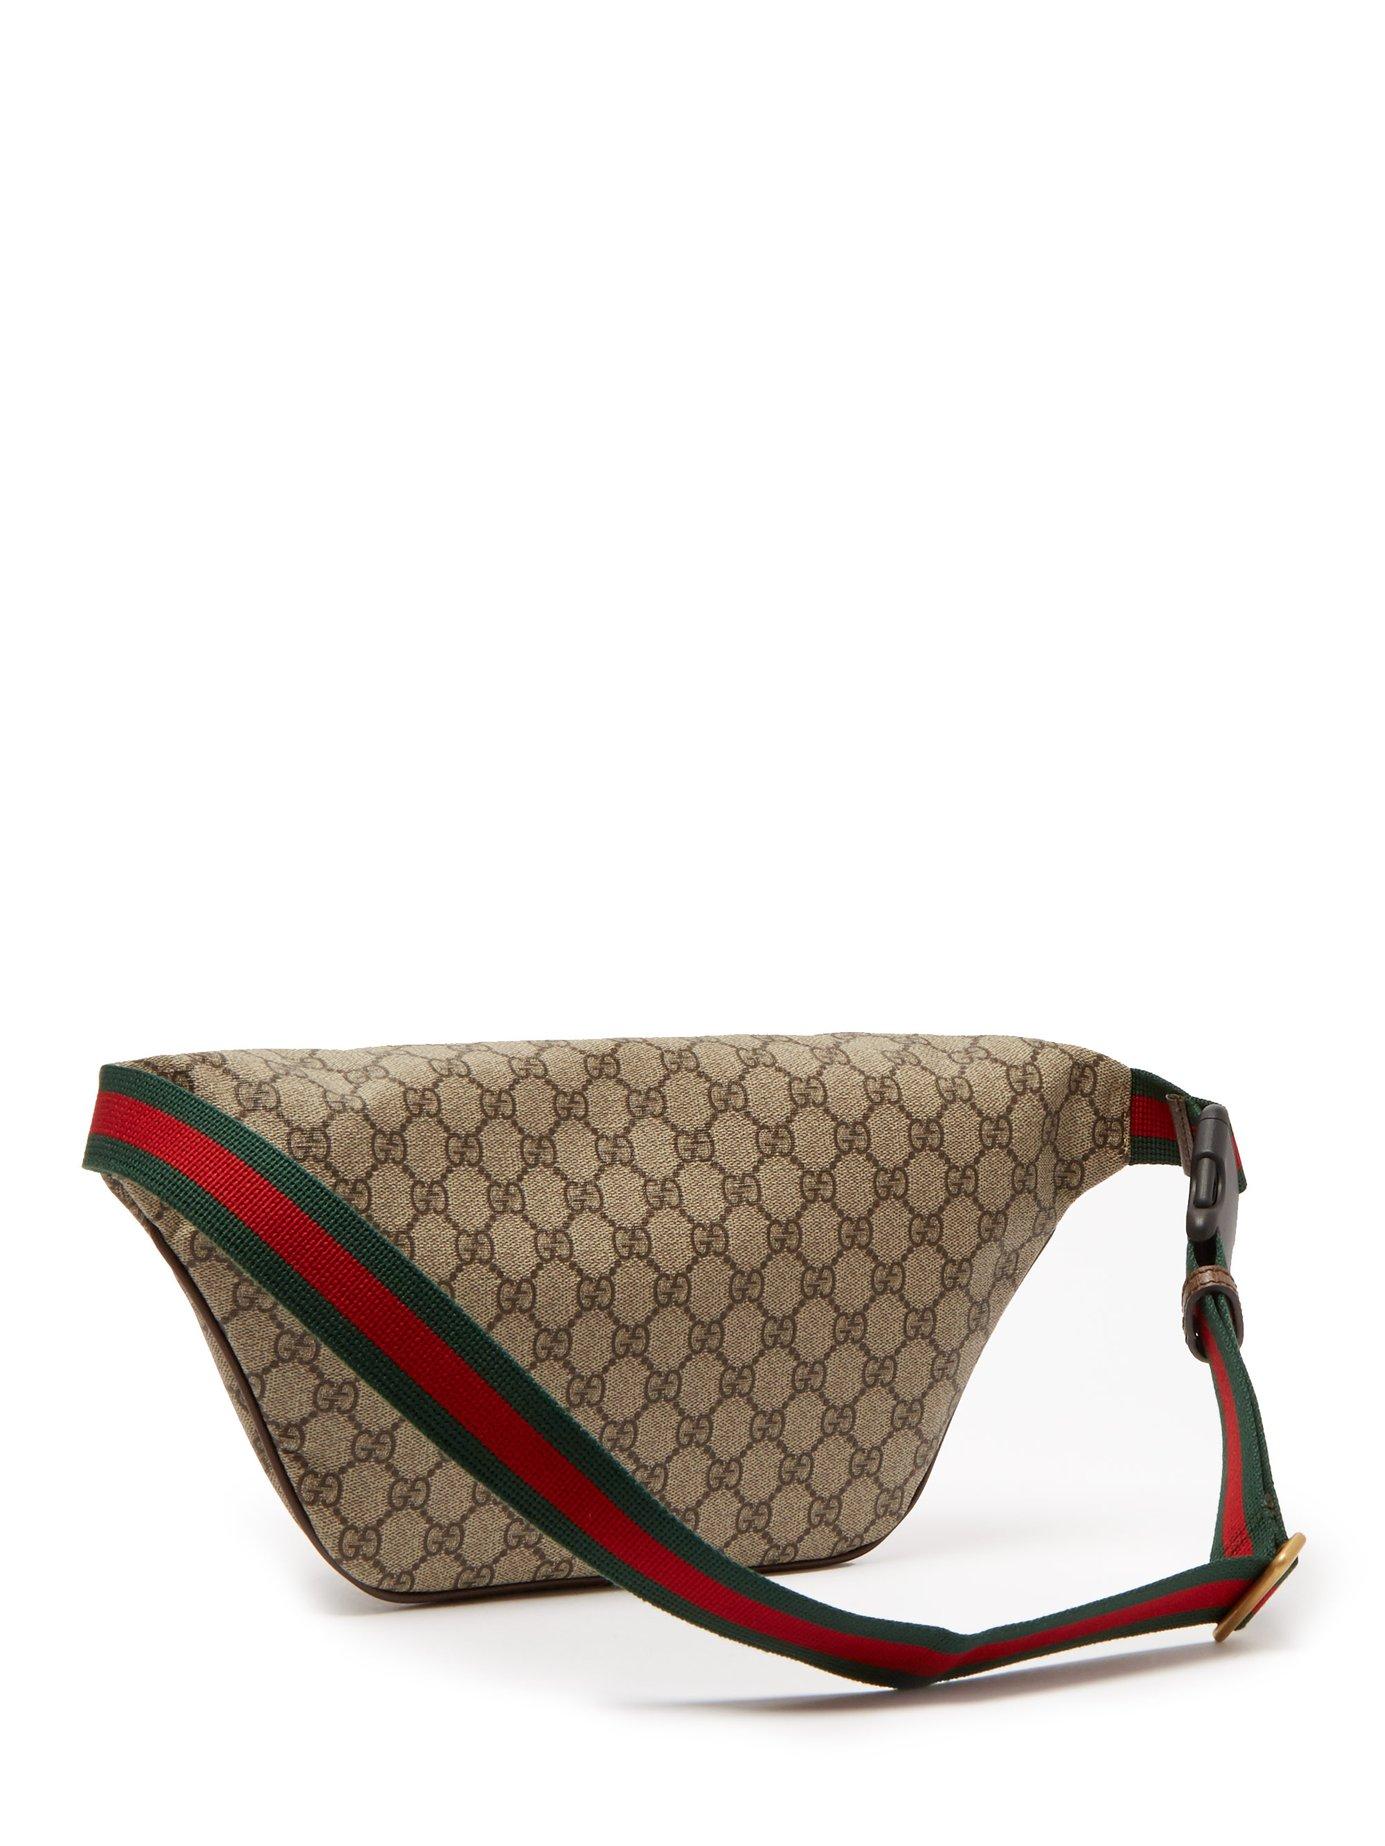 Gucci Gg Supreme Canvas Belt Bag in for Men - Lyst